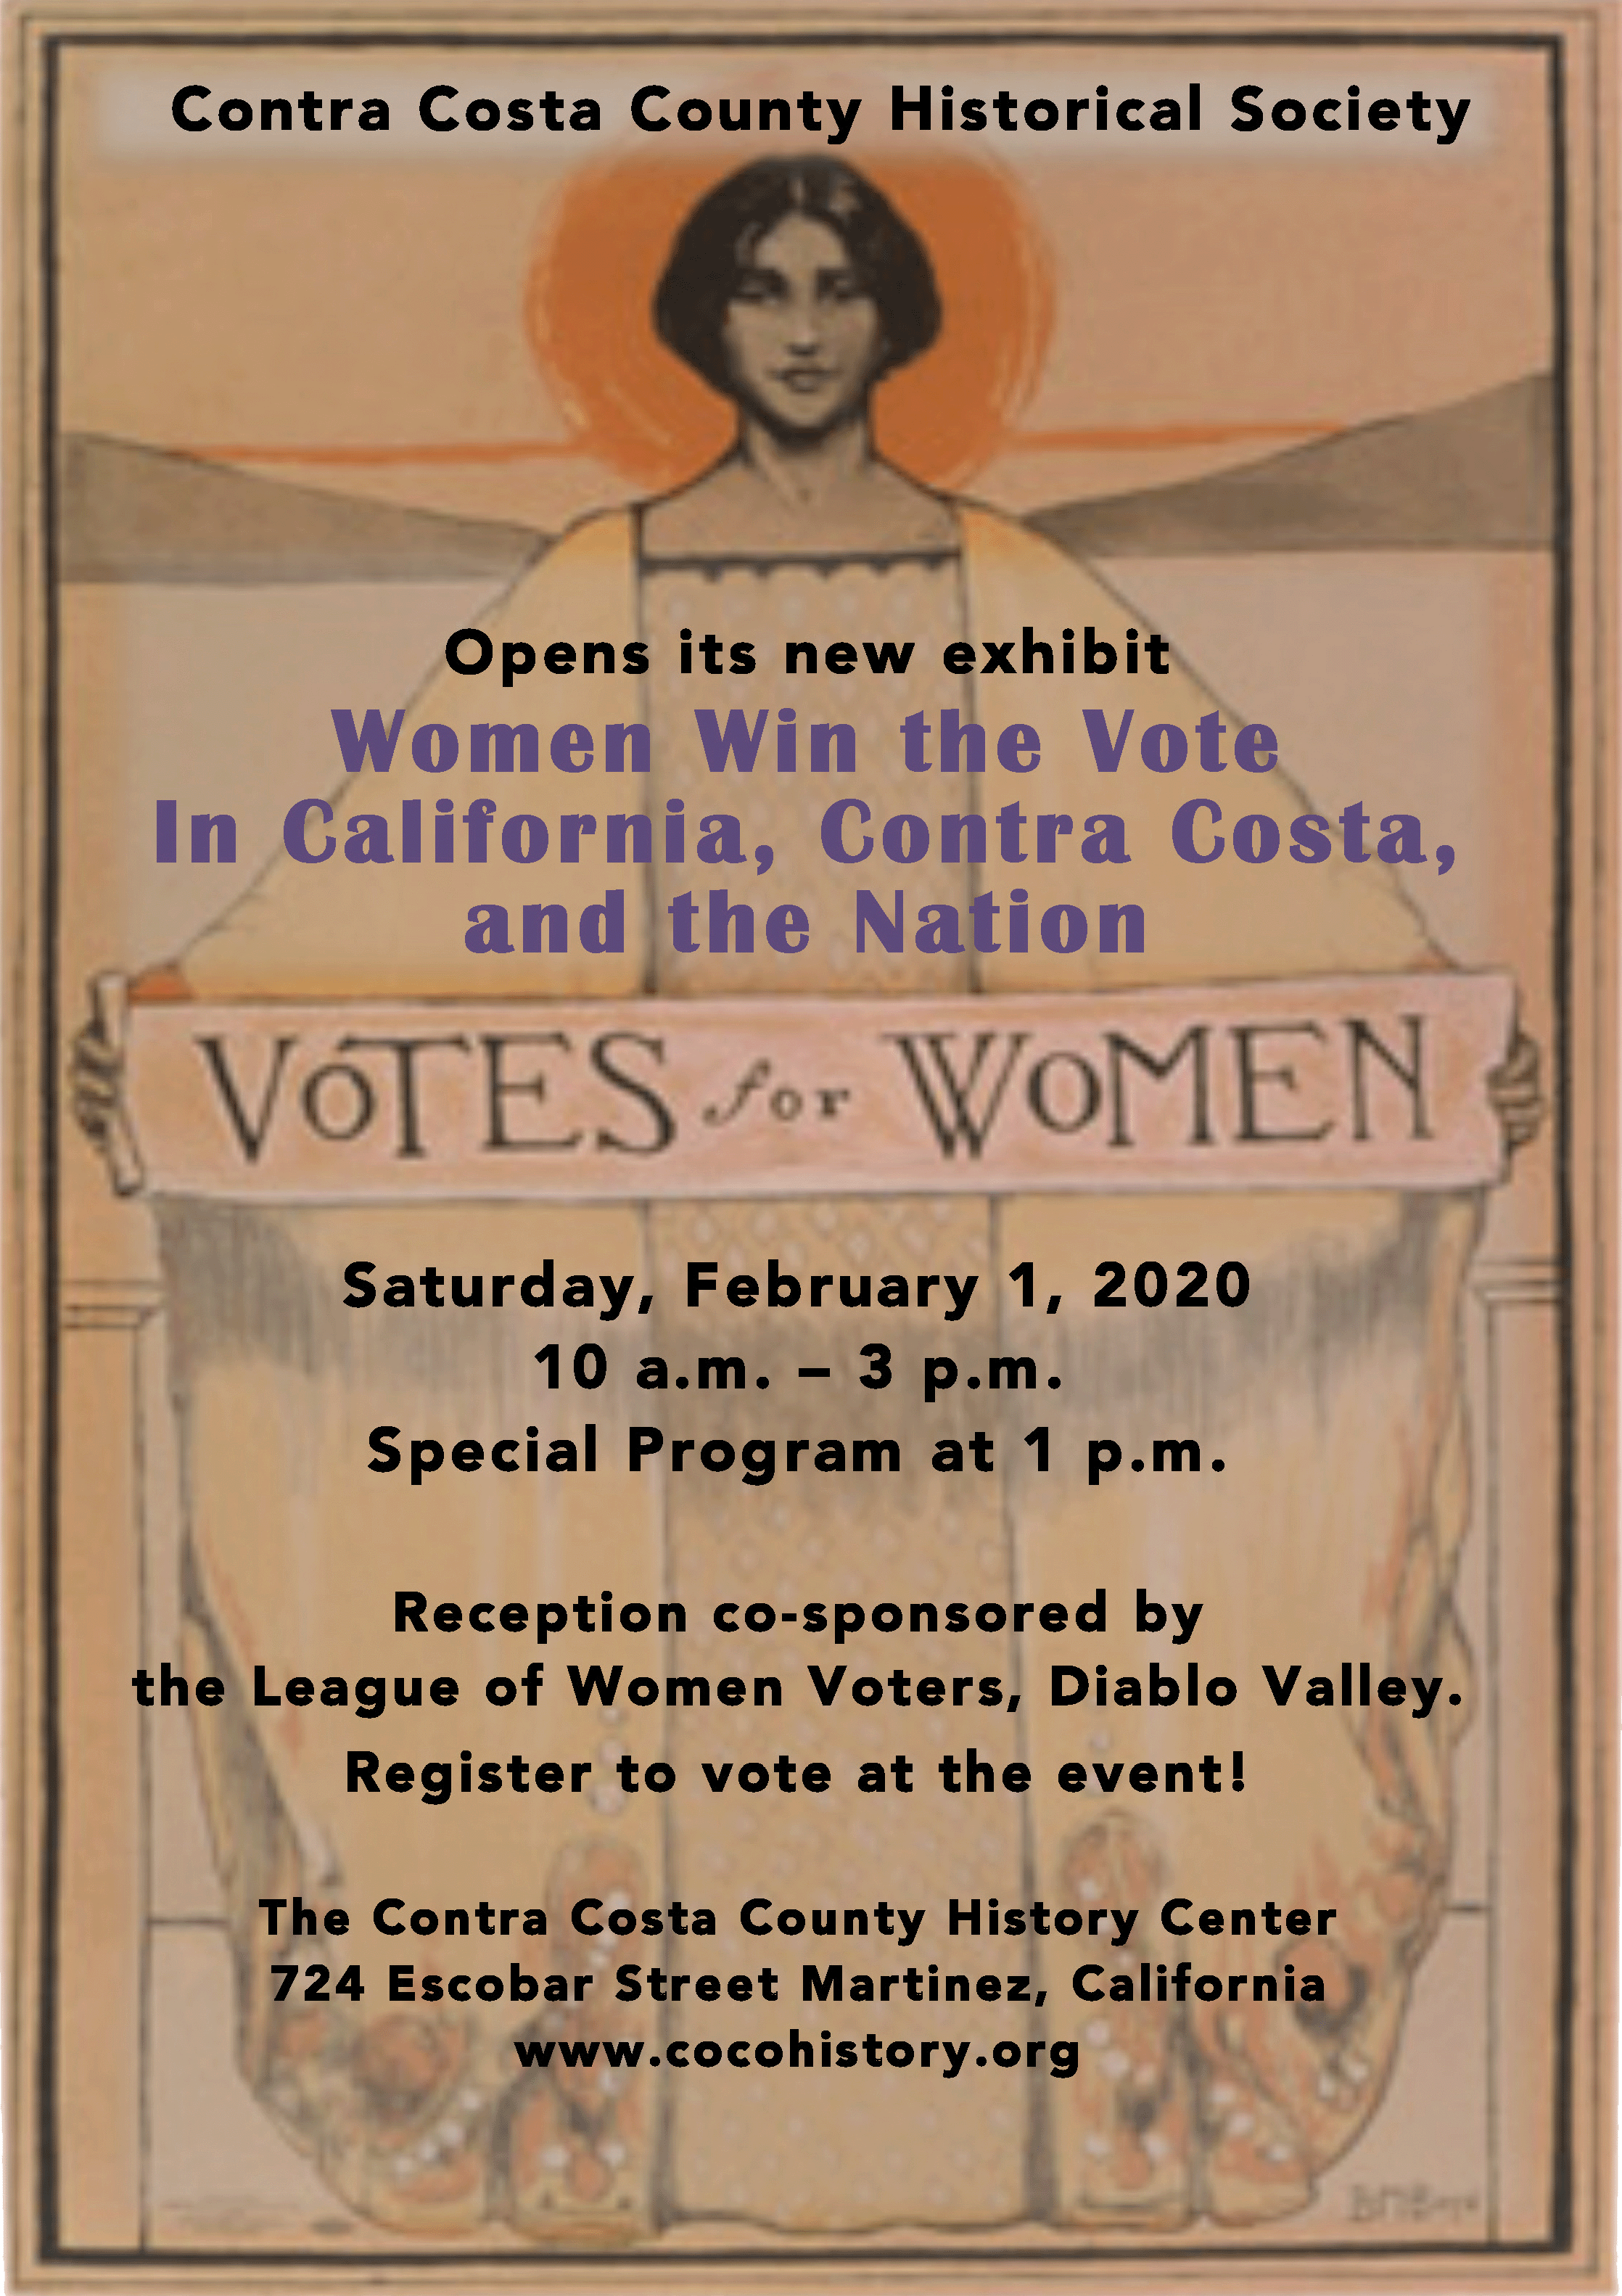 Women Win the Vote” exhibit in Contra Costa celebrating 100th anniversary of 19th Amendment begins with reception Feb. 1 | Contra Costa Herald